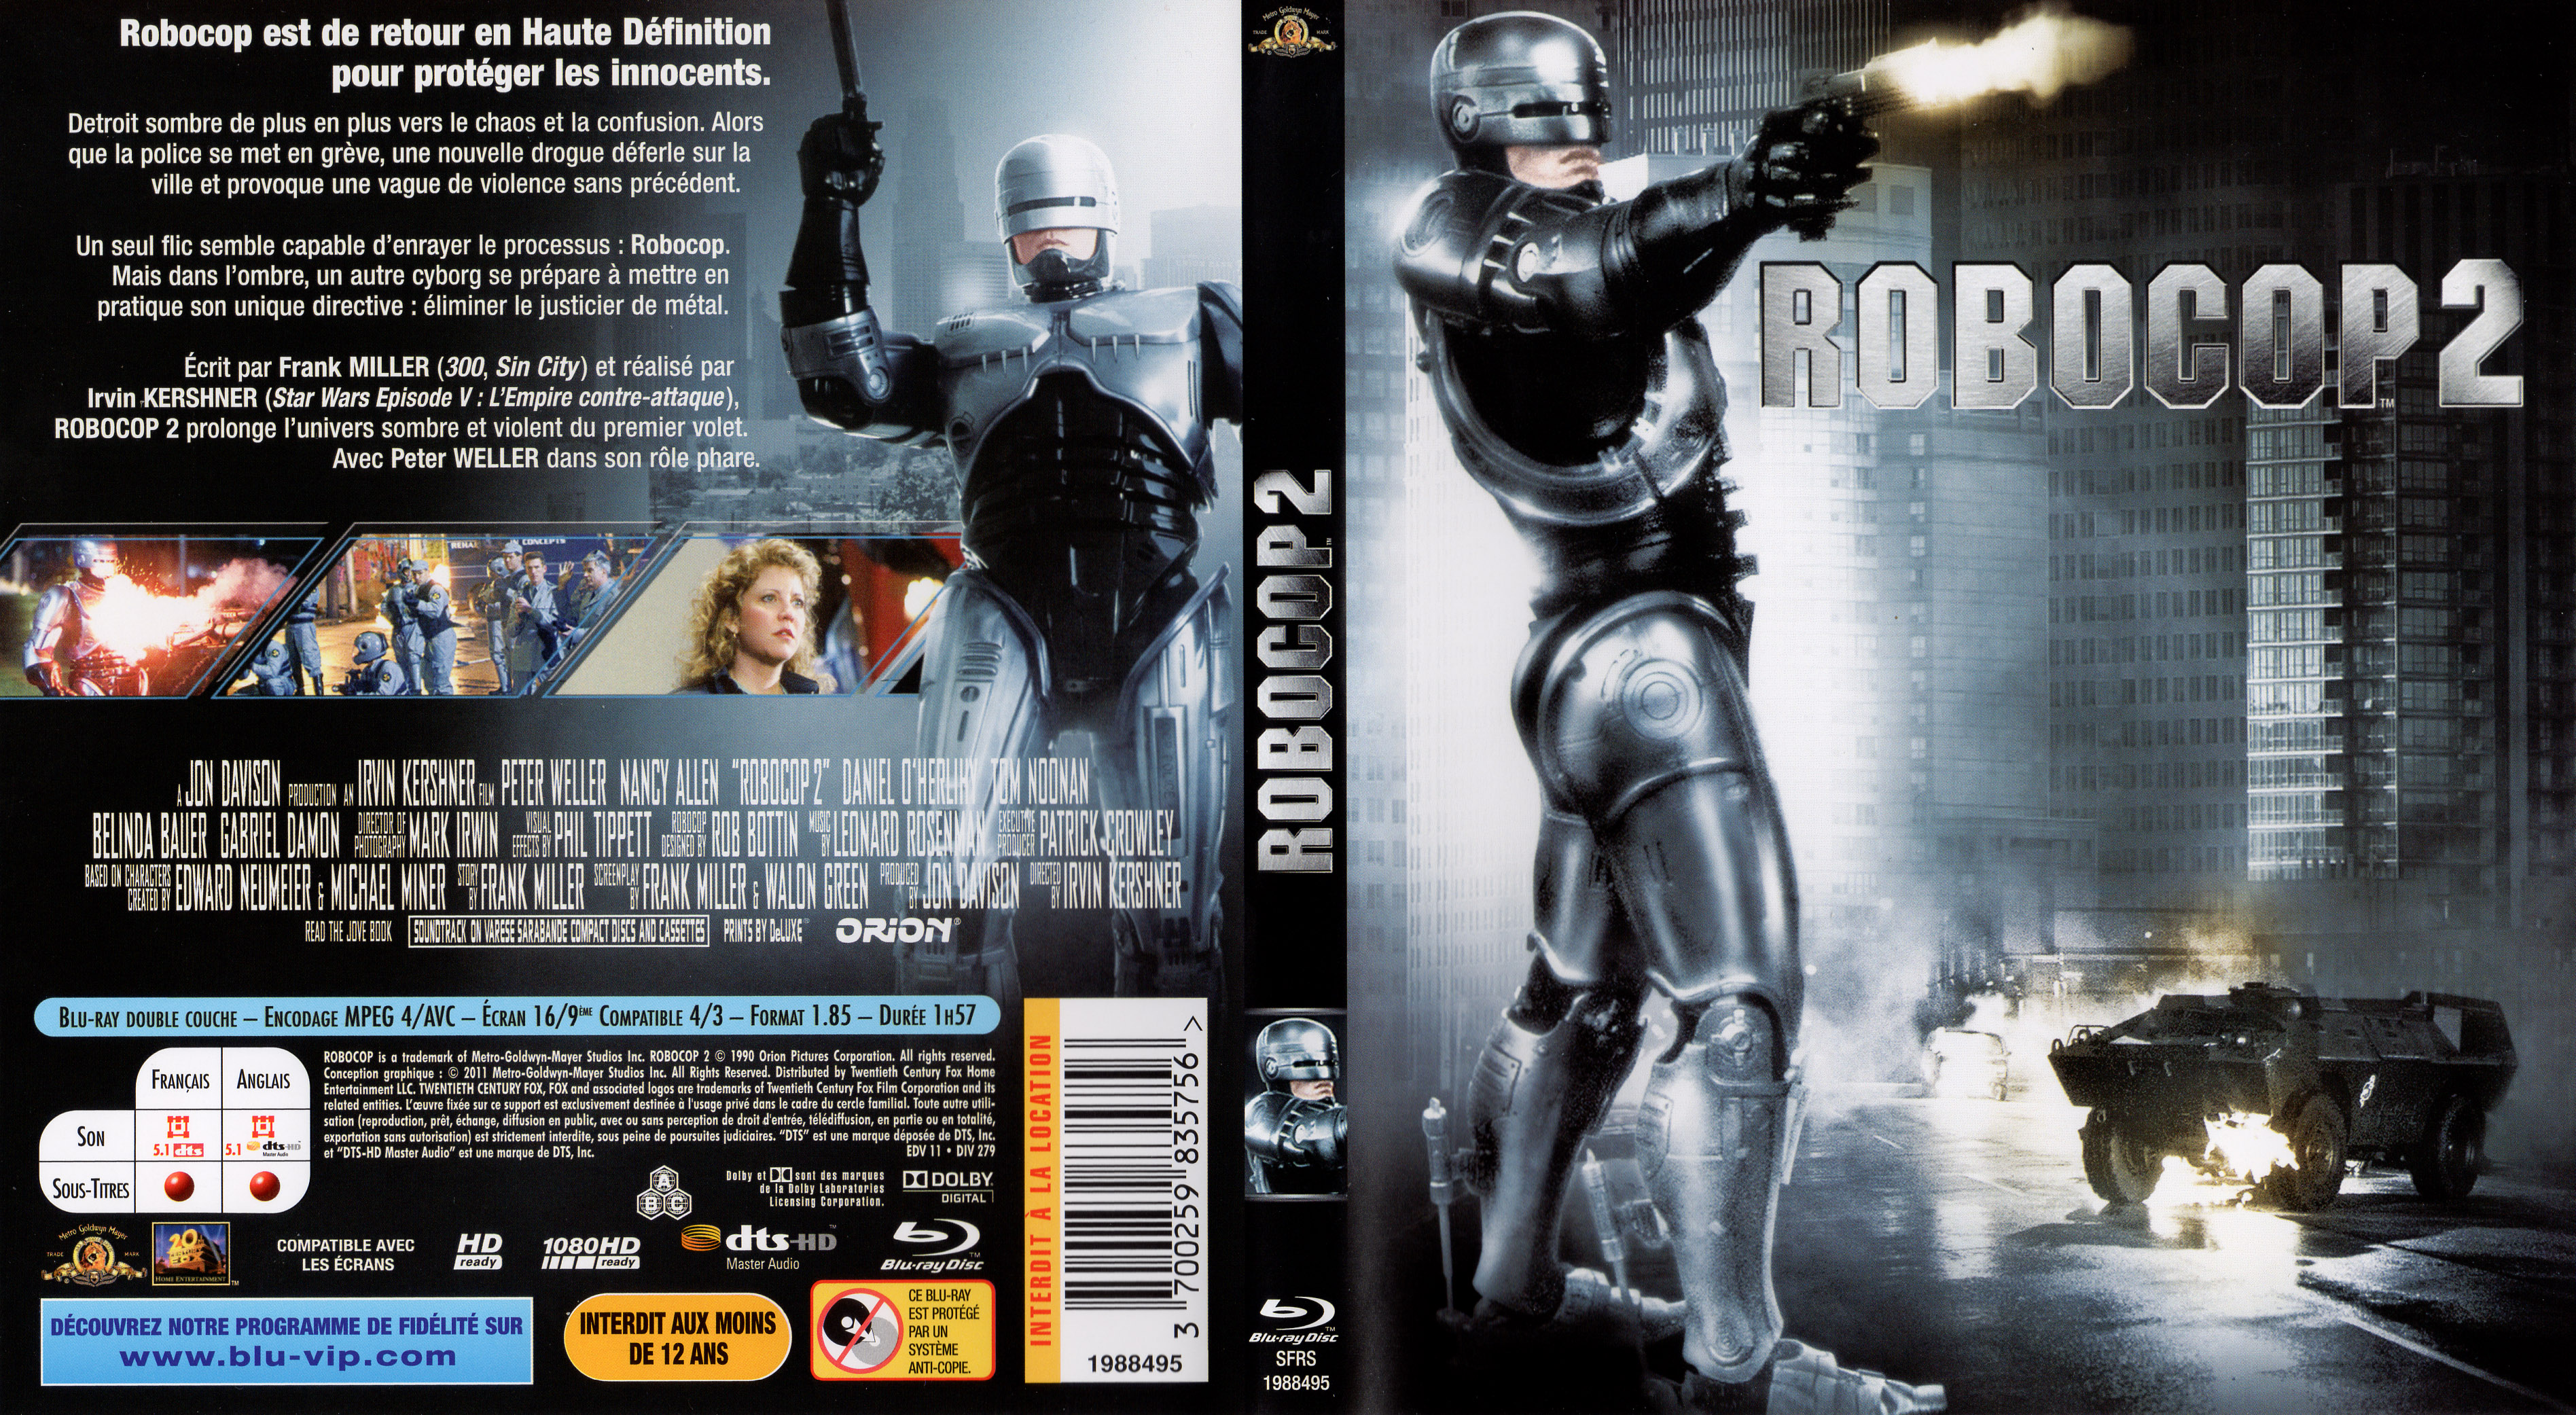 Jaquette DVD Robocop 2 (BLU-RAY)